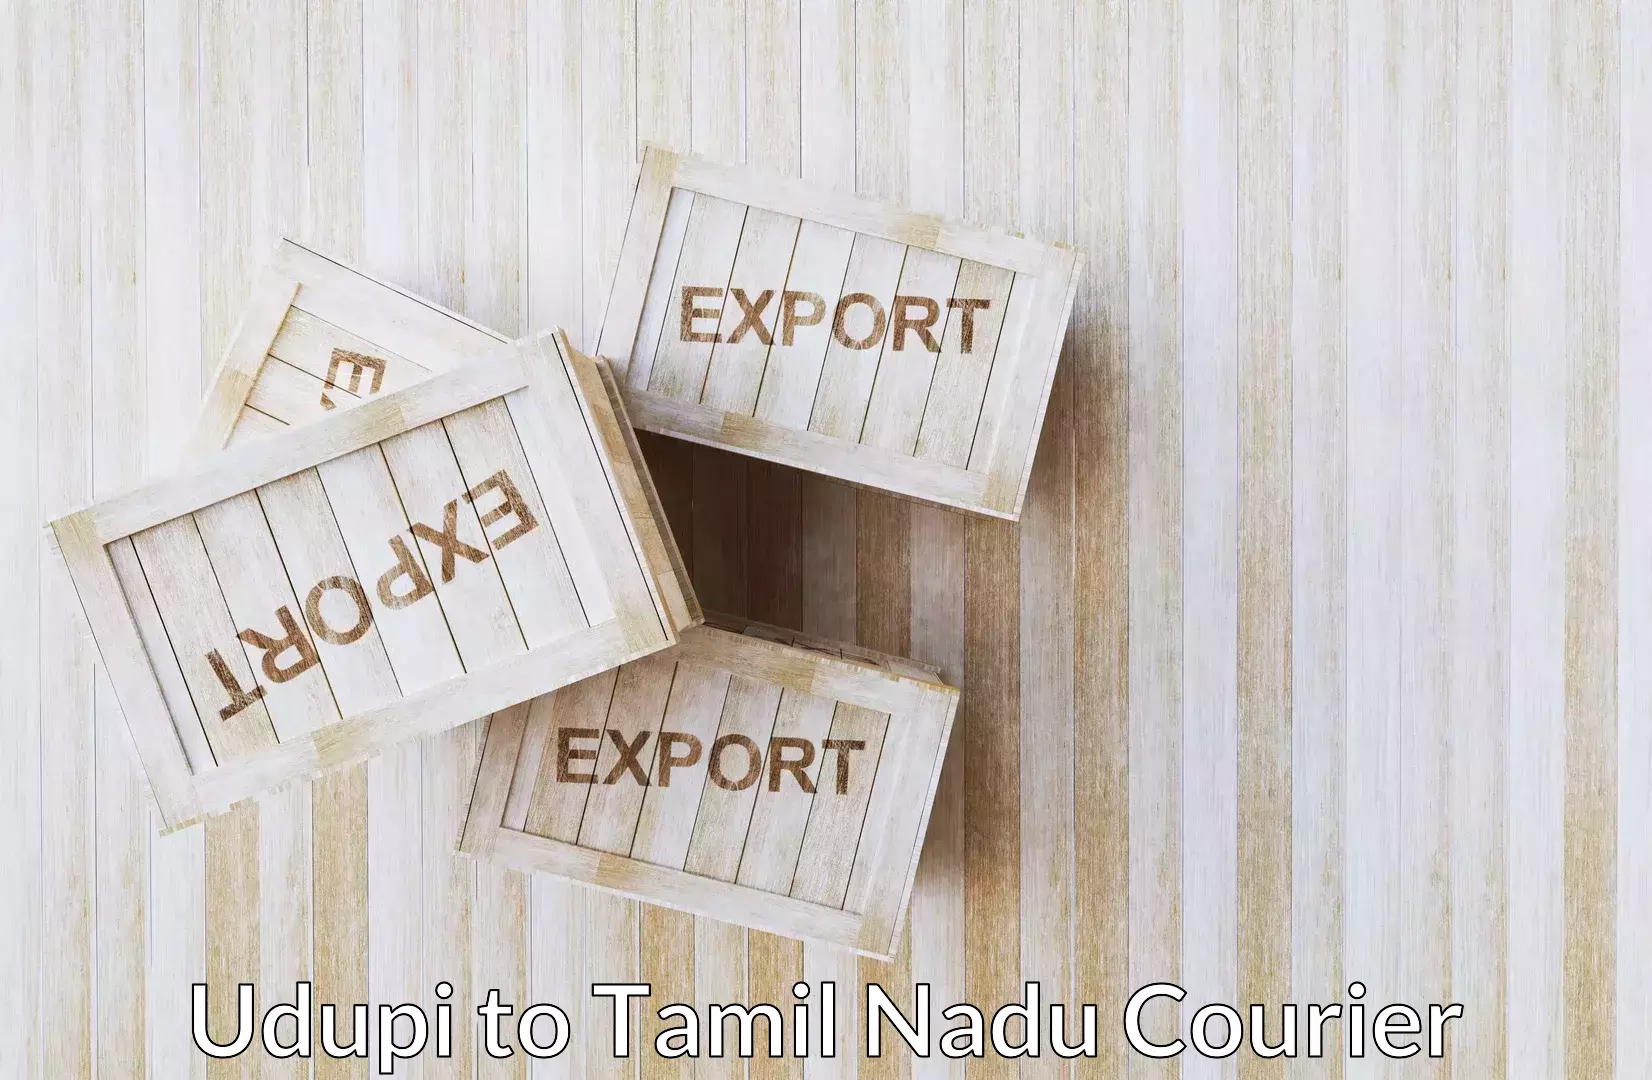 Baggage transport logistics in Udupi to Tamil Nadu